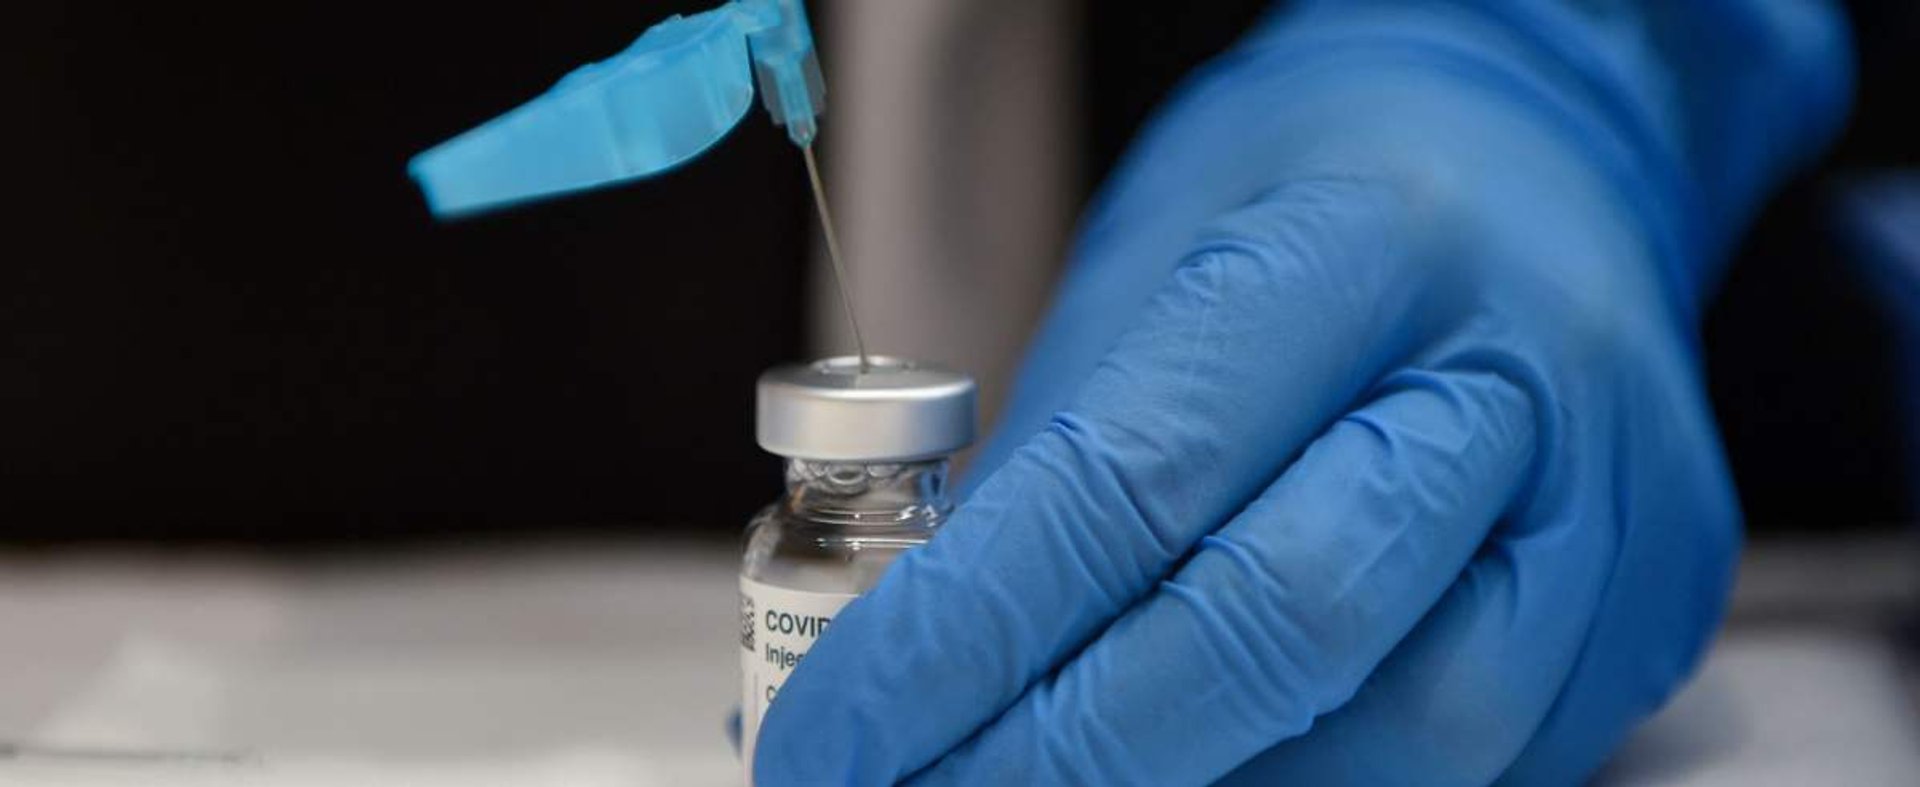 Kolejne kraje rezygnują ze szczepienia obywateli preparatem AstraZeneca.